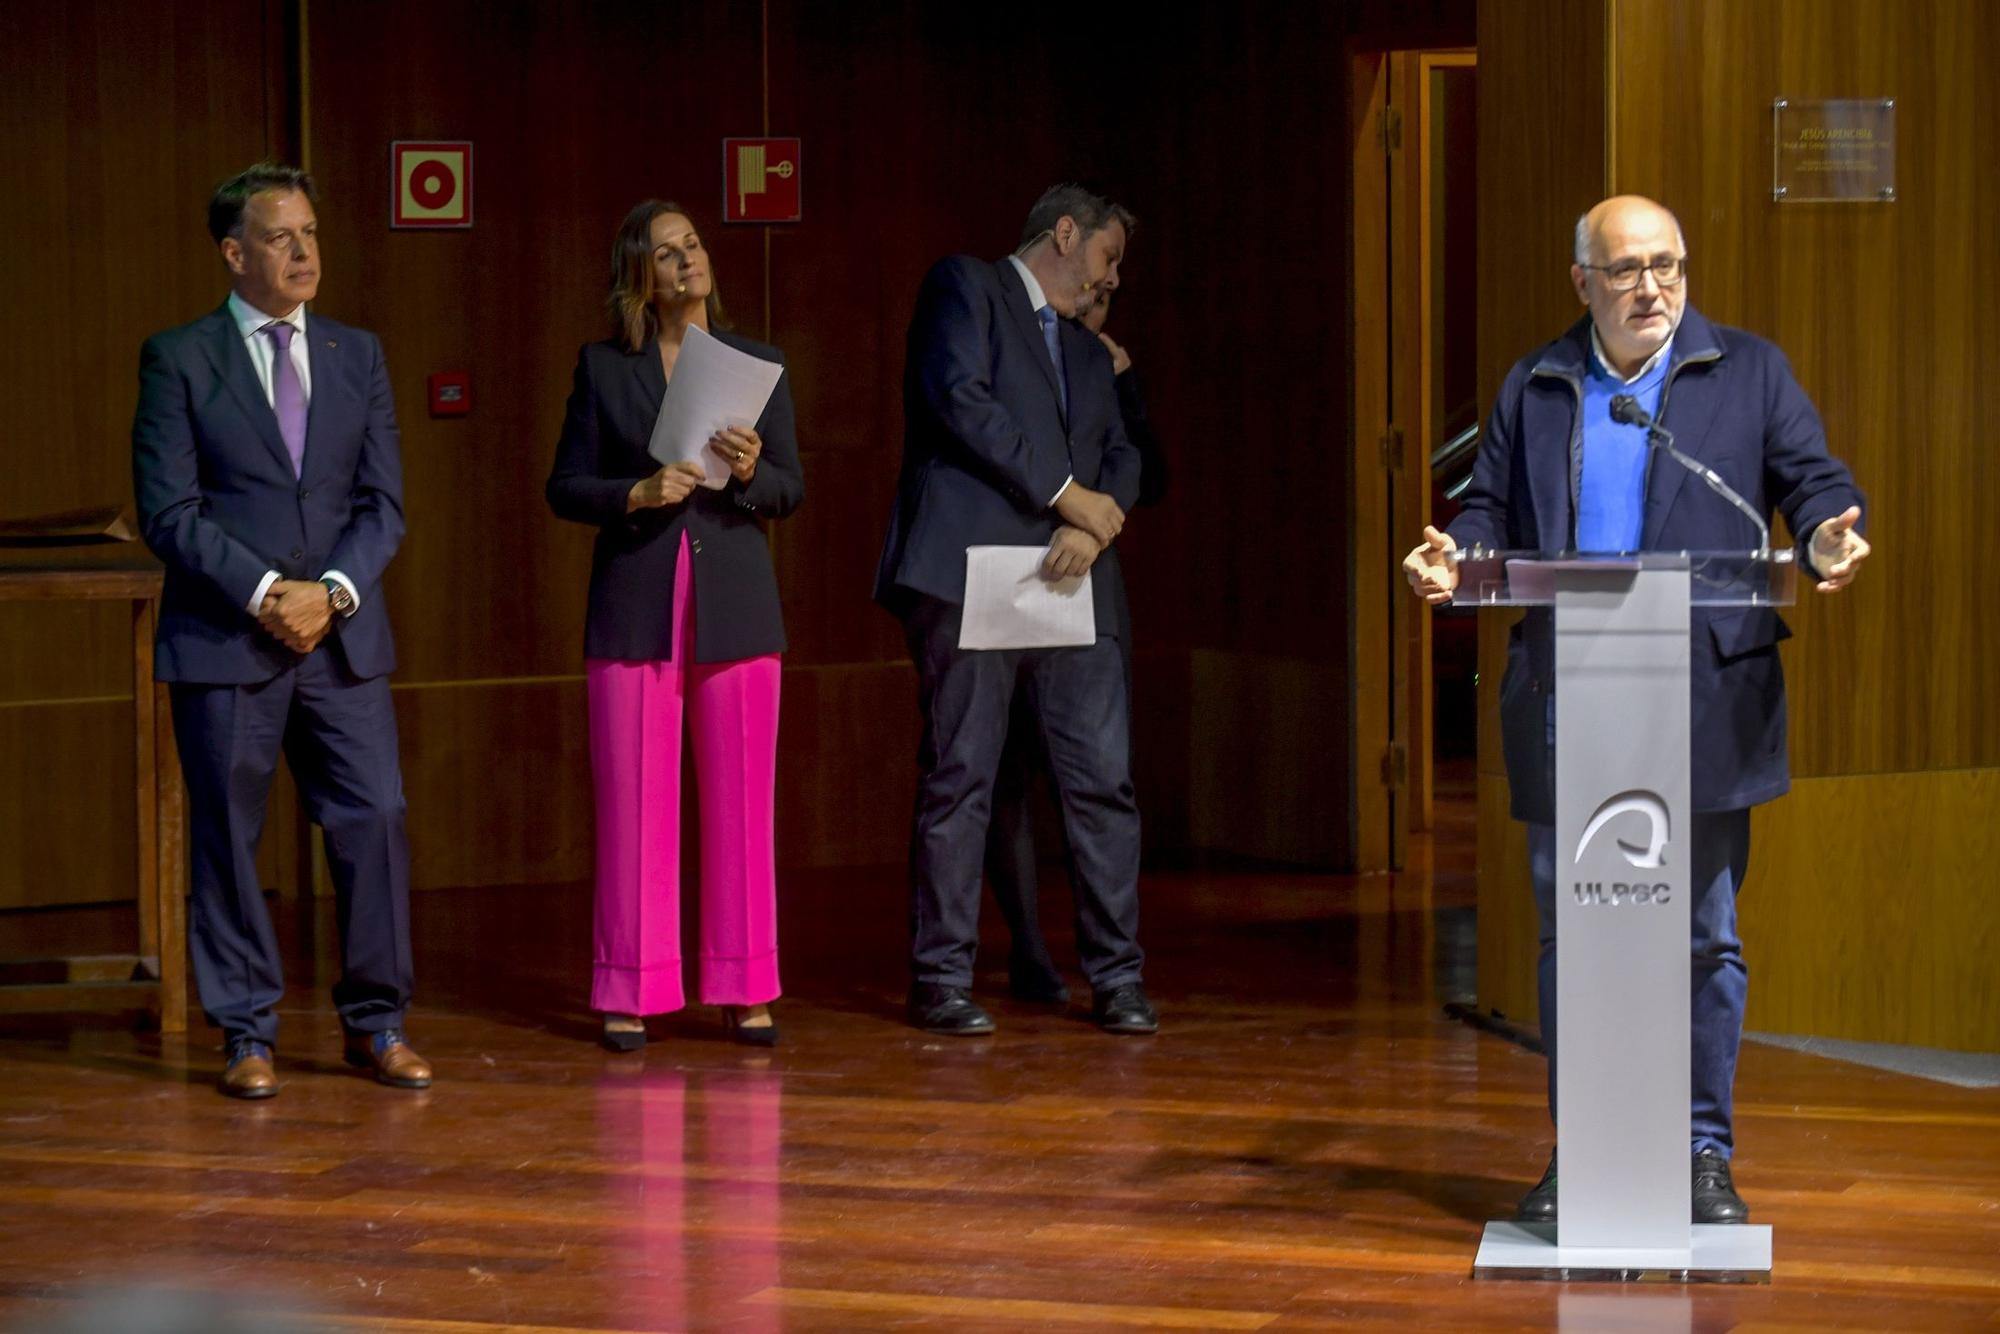 Vela latina: gala de entrega de trofeos y reconocimientos